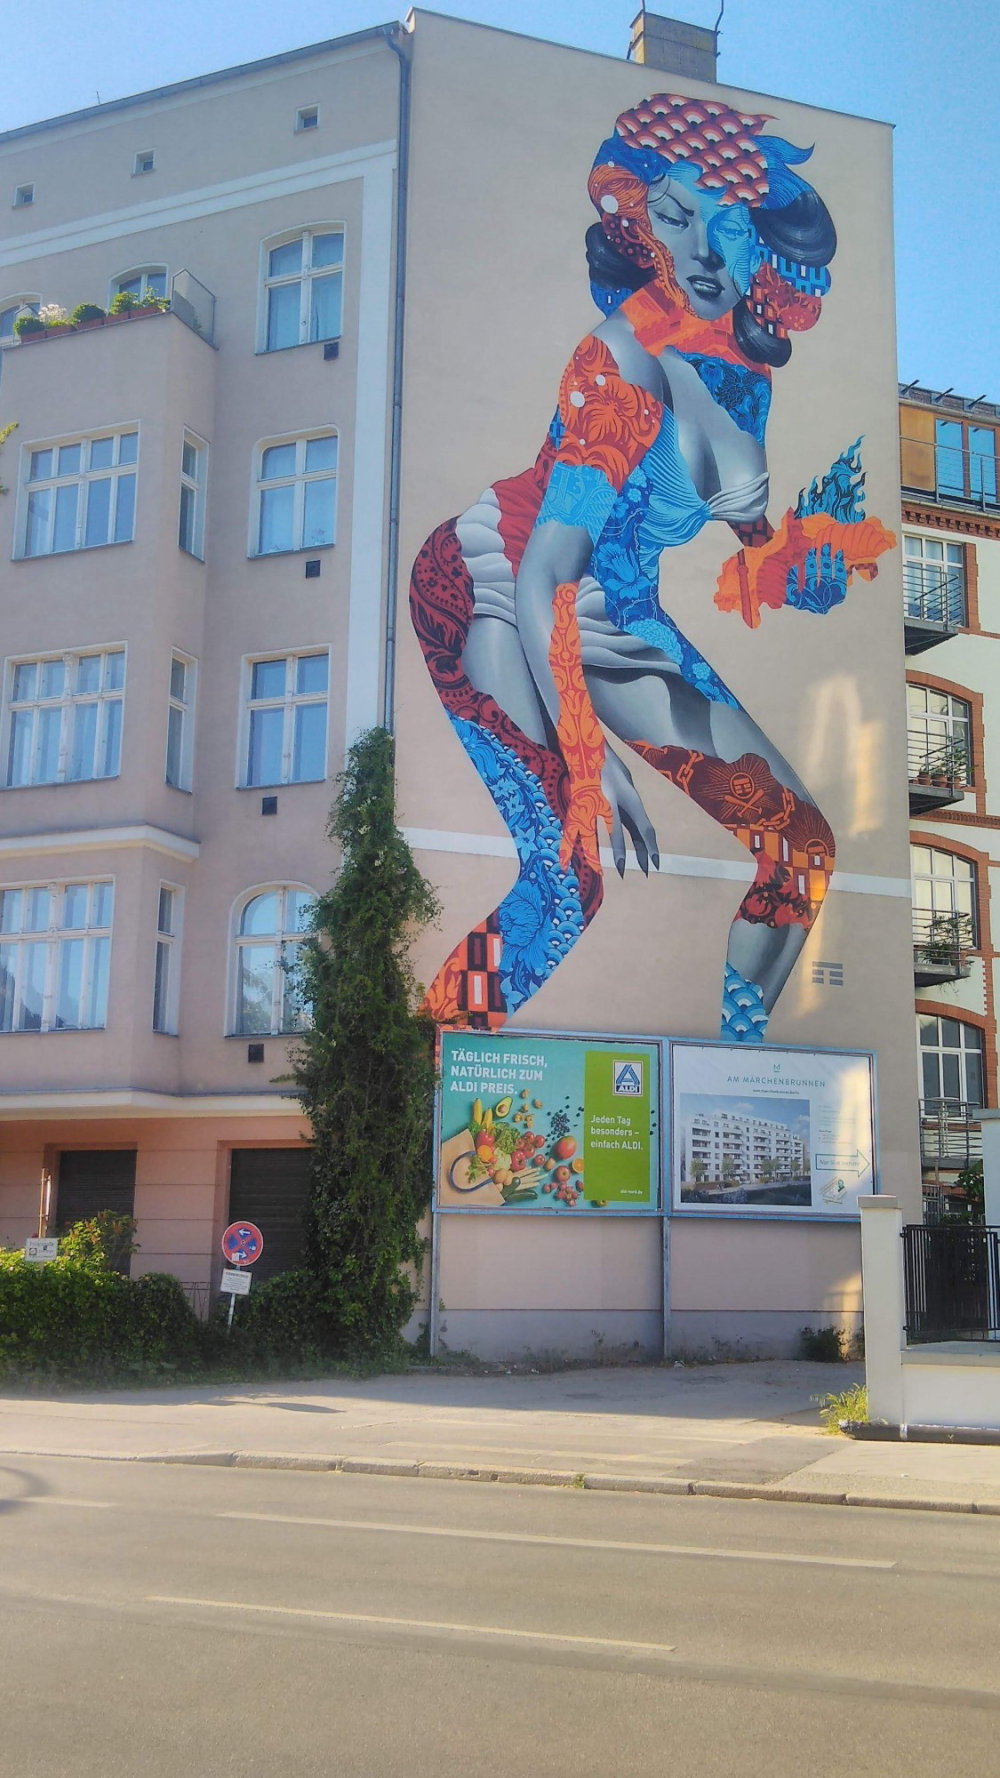 mural in Berlin by artist Tristan Eaton.